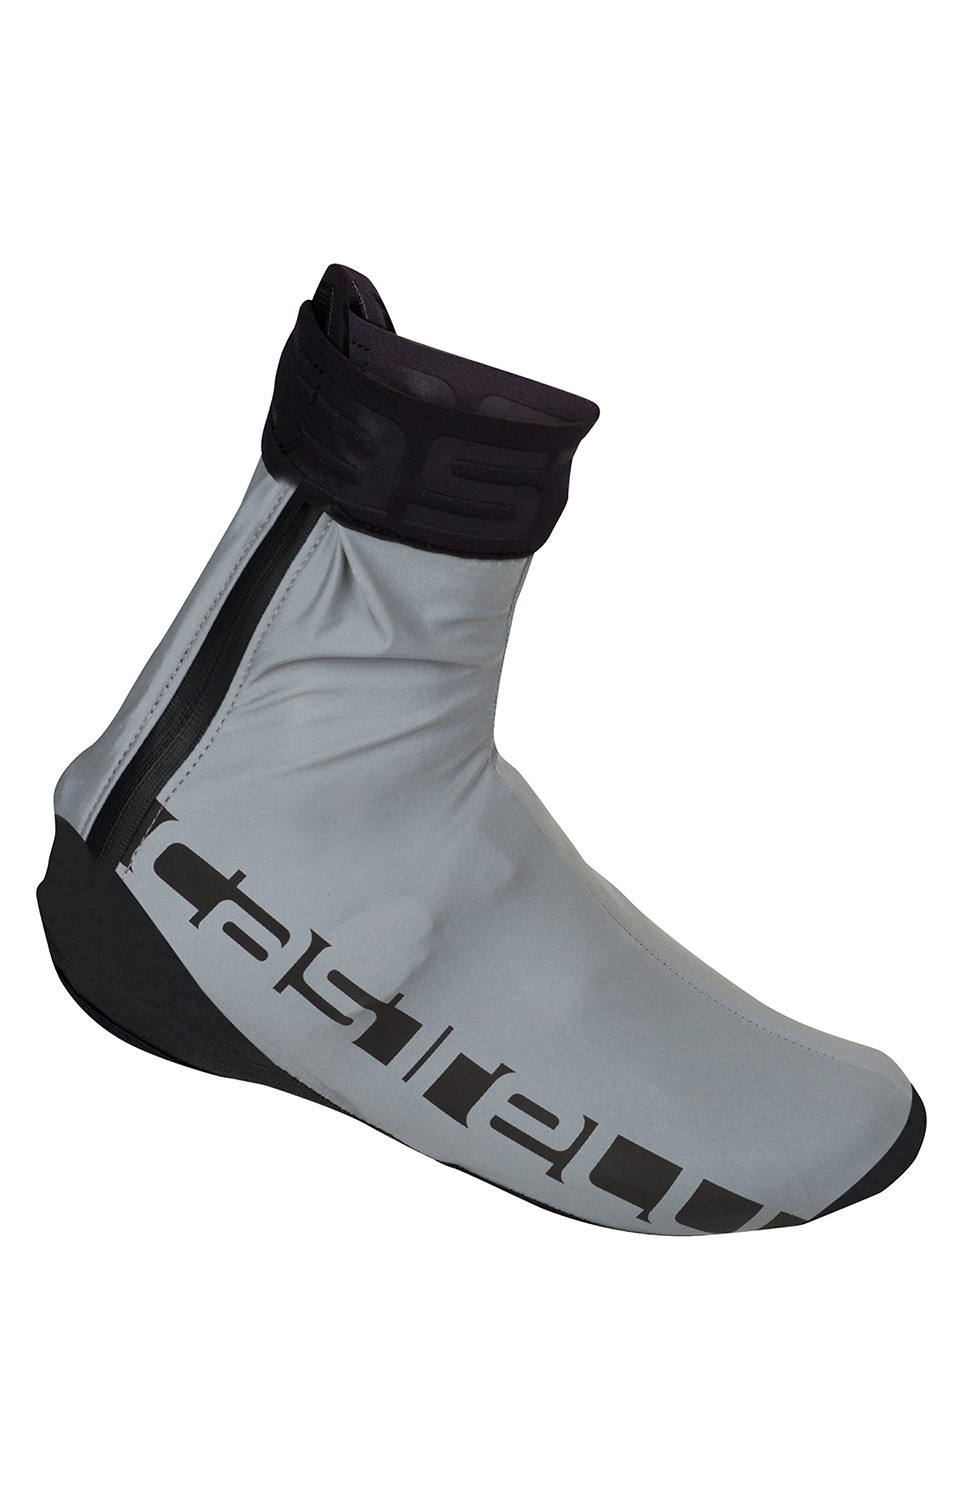 Castelli Reflex Shoe Covers | R\u0026A Cycles